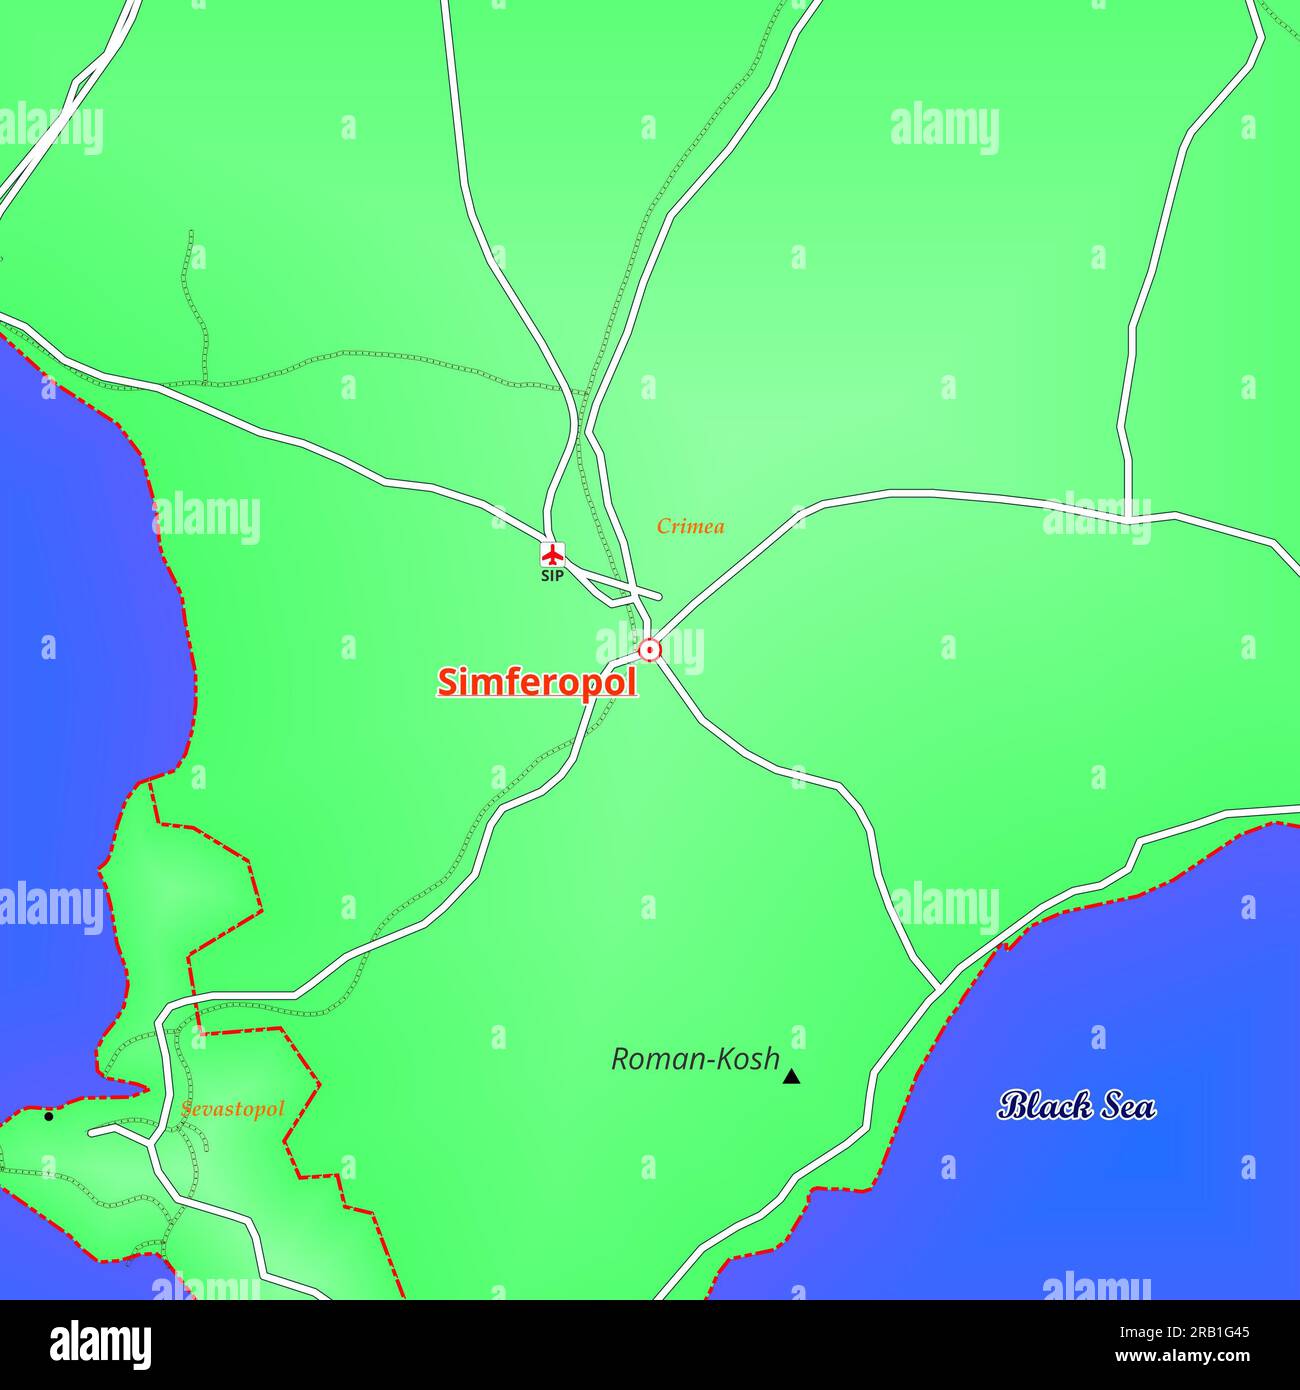 Map of Simferopol City in Russia Stock Photo